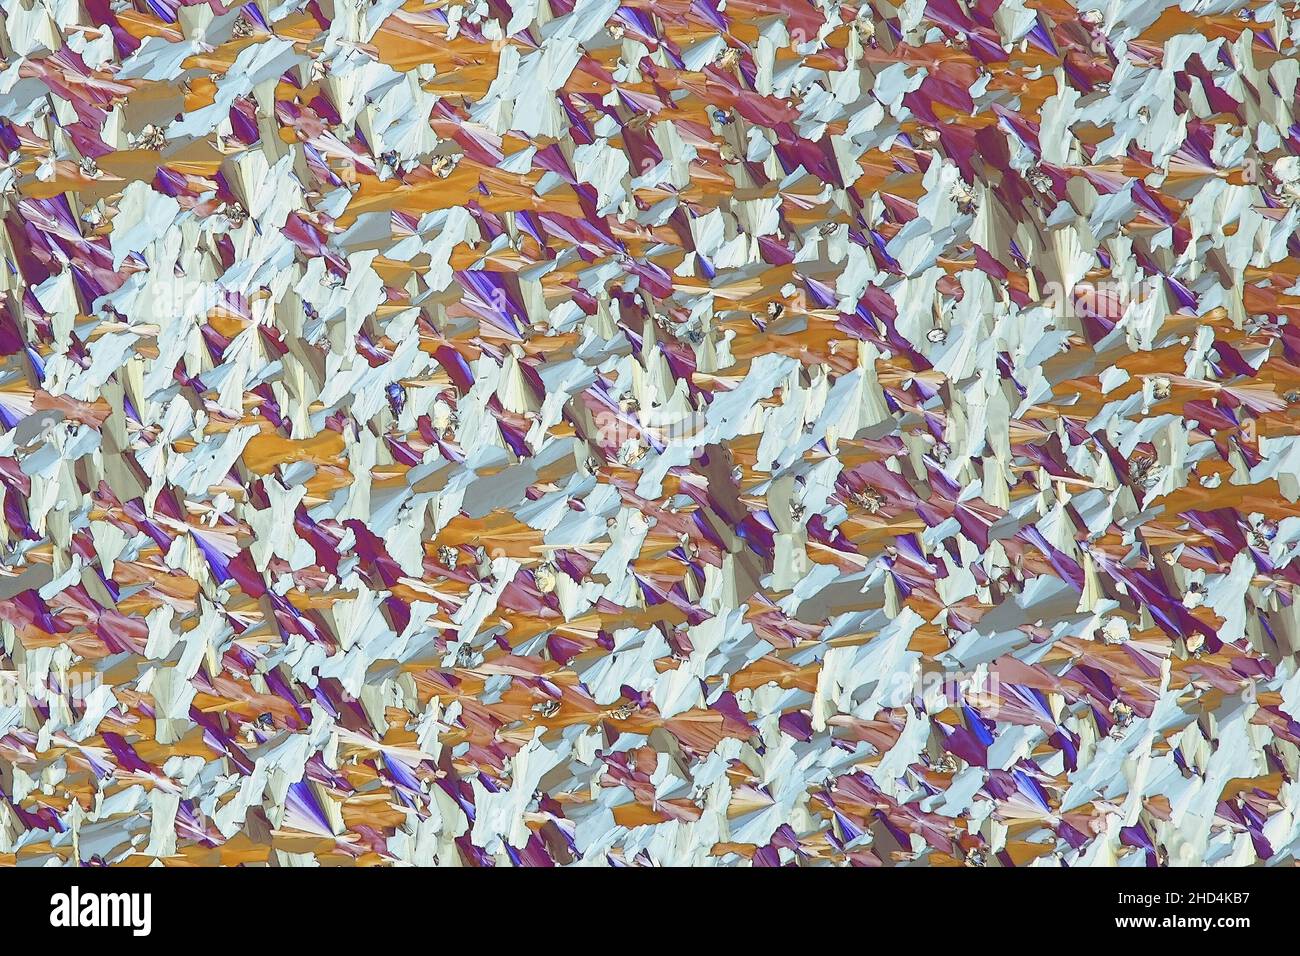 Cristalli di acido tartarico, immagine astratta al microscopio Foto Stock